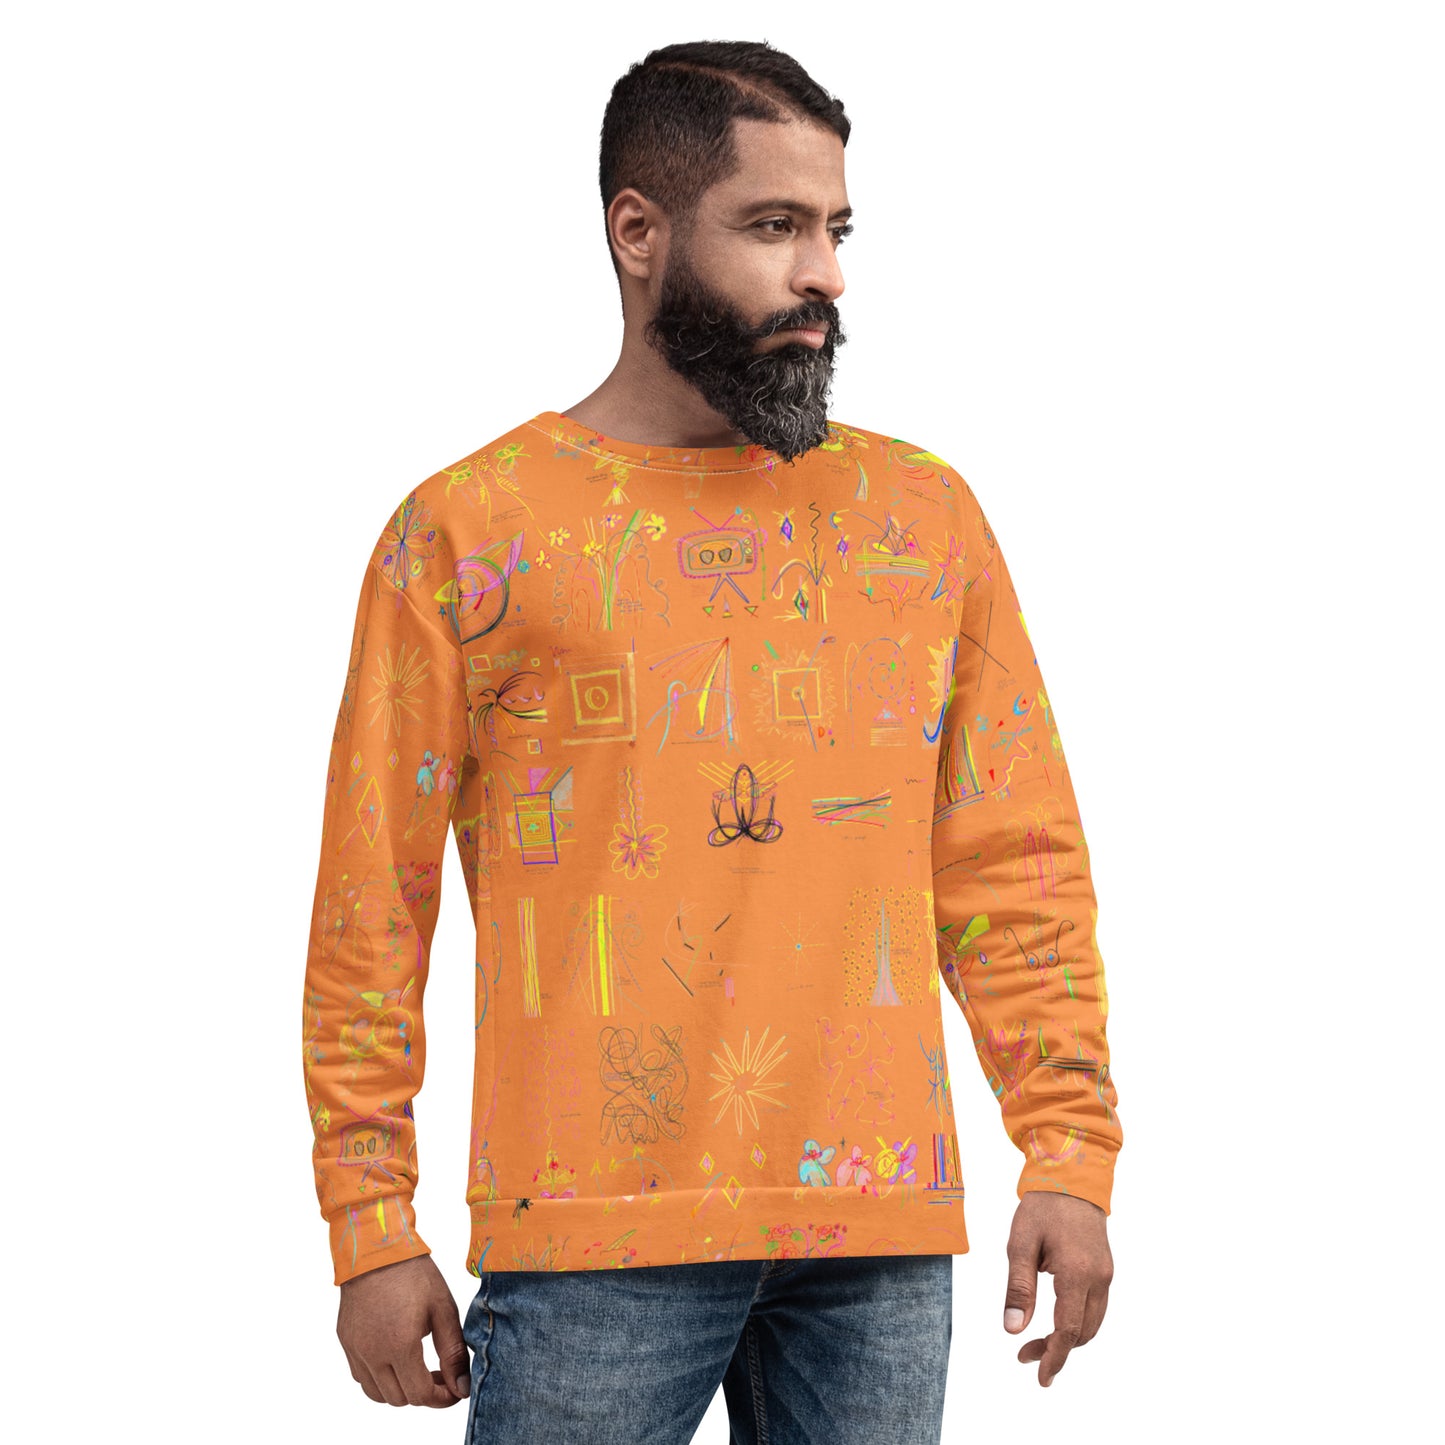 Check In, sweatshirt in orange